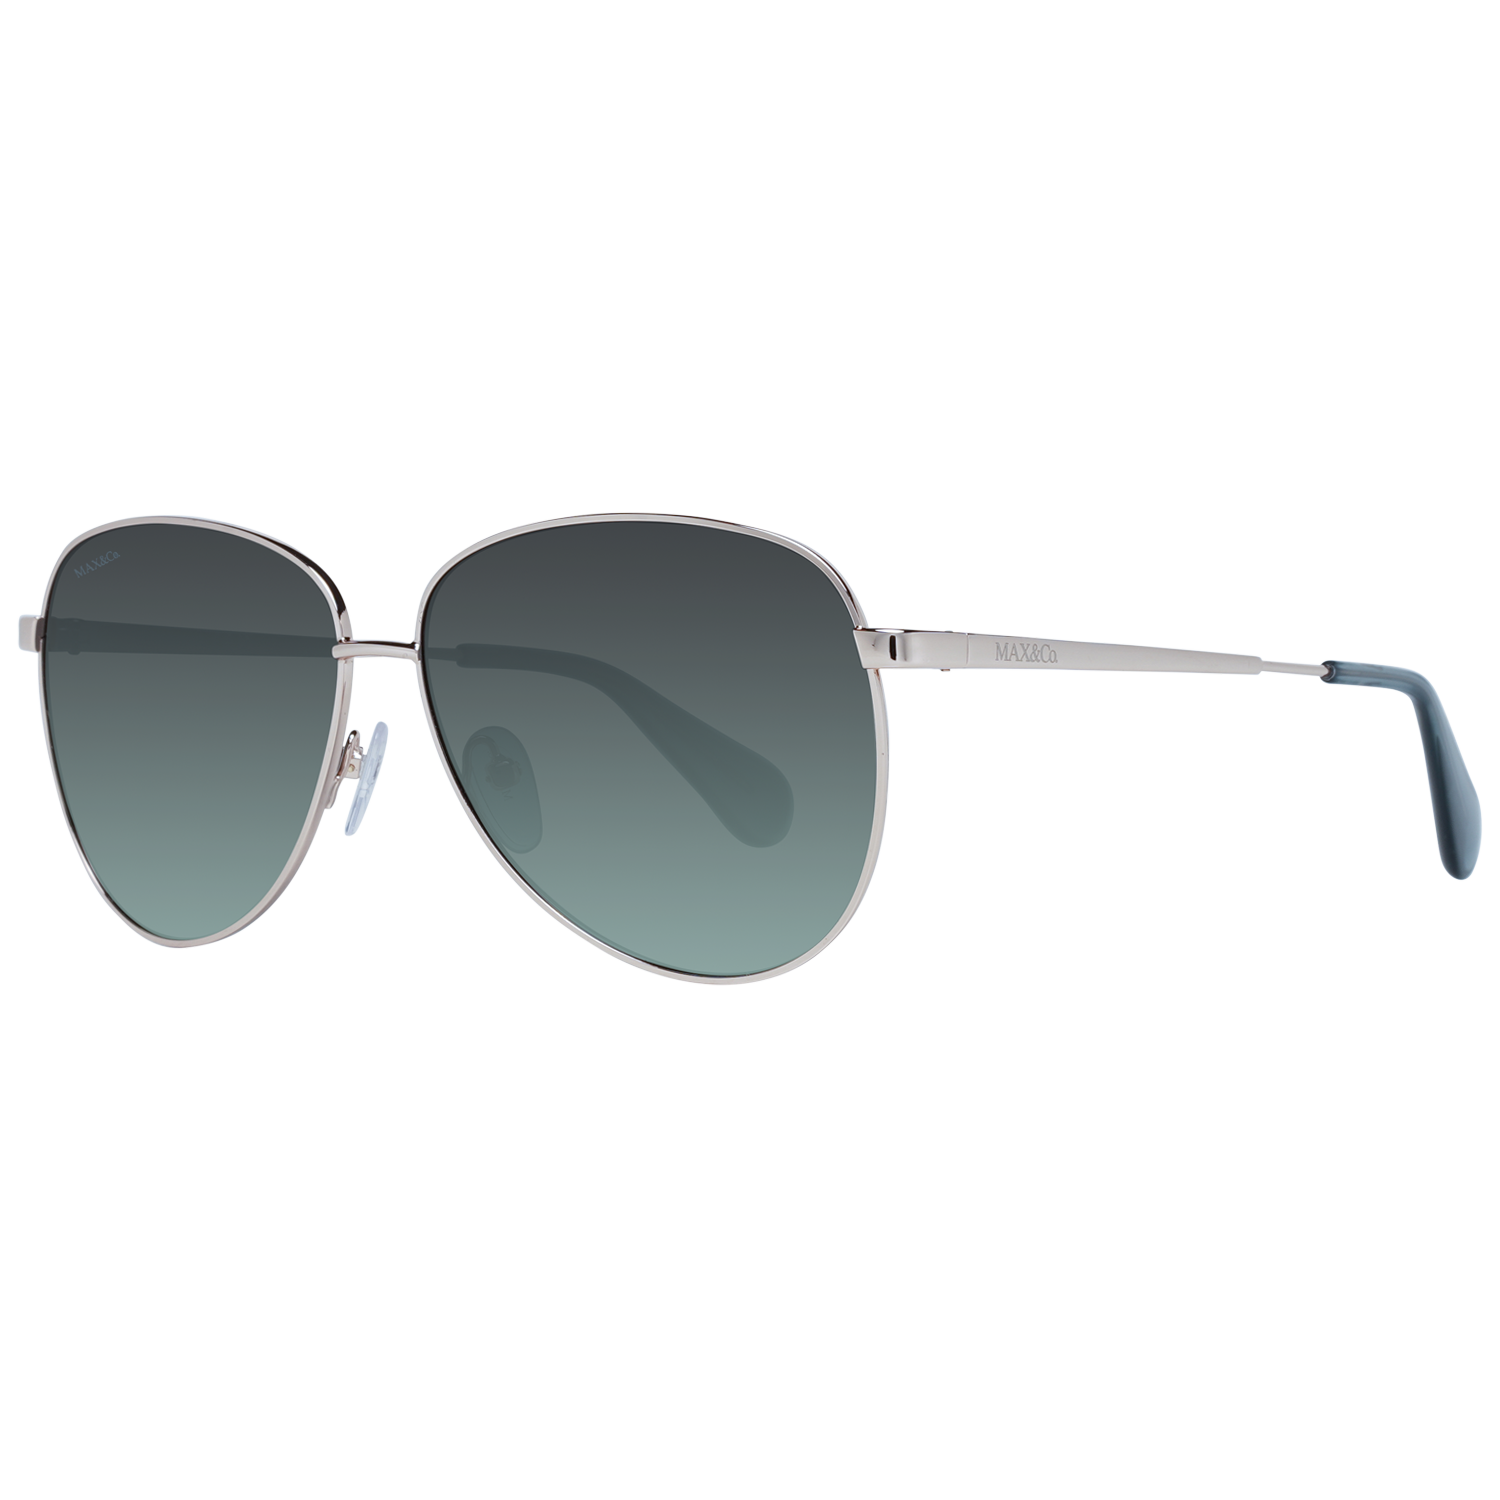 Dámské sluneční brýle Max & Co MO0049 28P 58